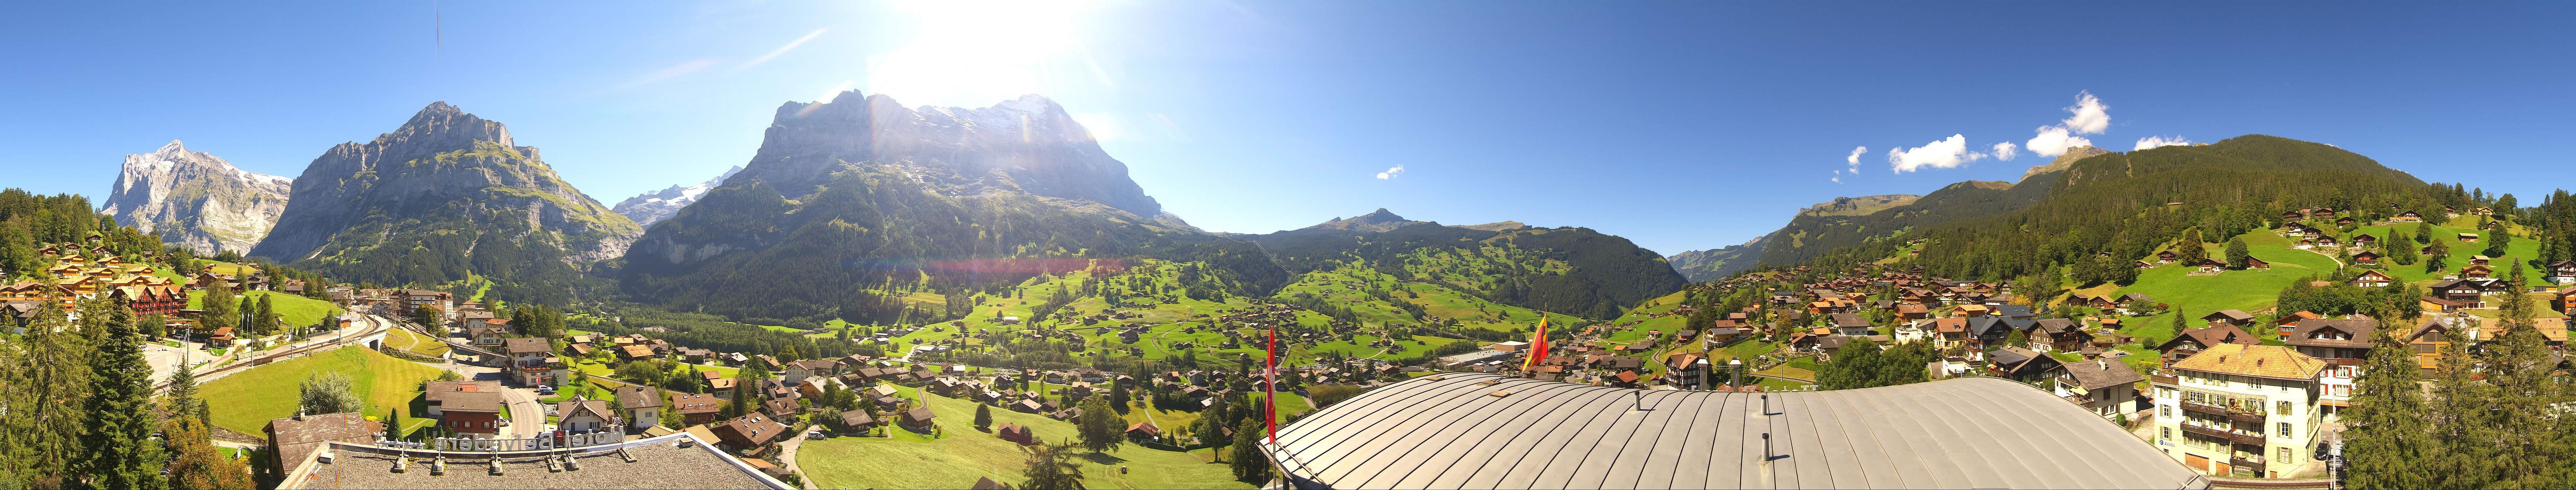 Webcam Grindelwald Hotel Belvedere 